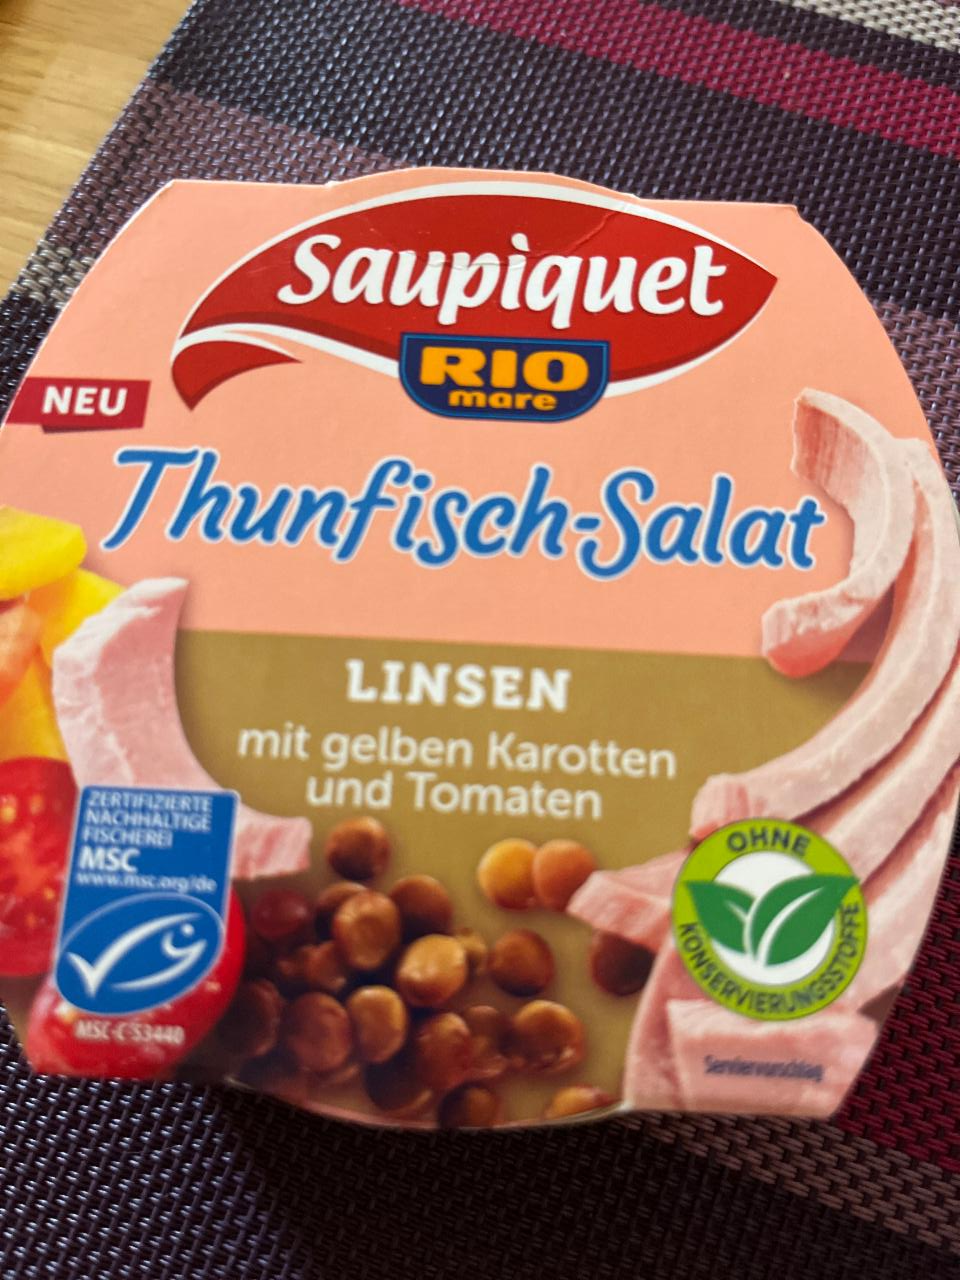 Fotografie - Thunfisch-Salat Linsen Saupiquet